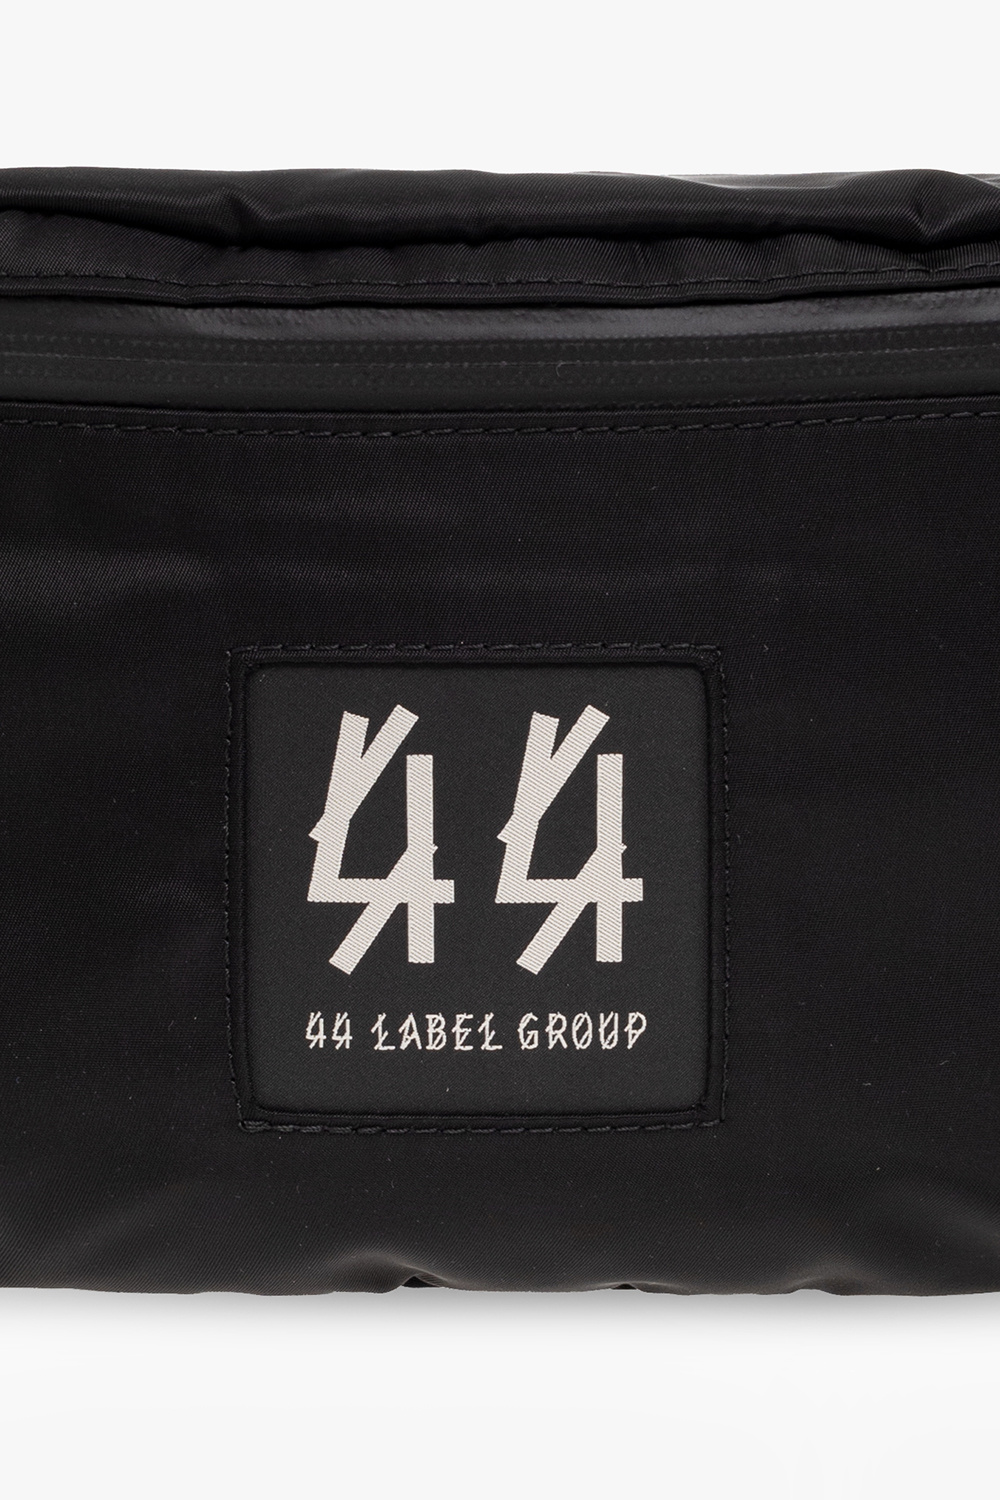 44 Label Group Belt Orange bag